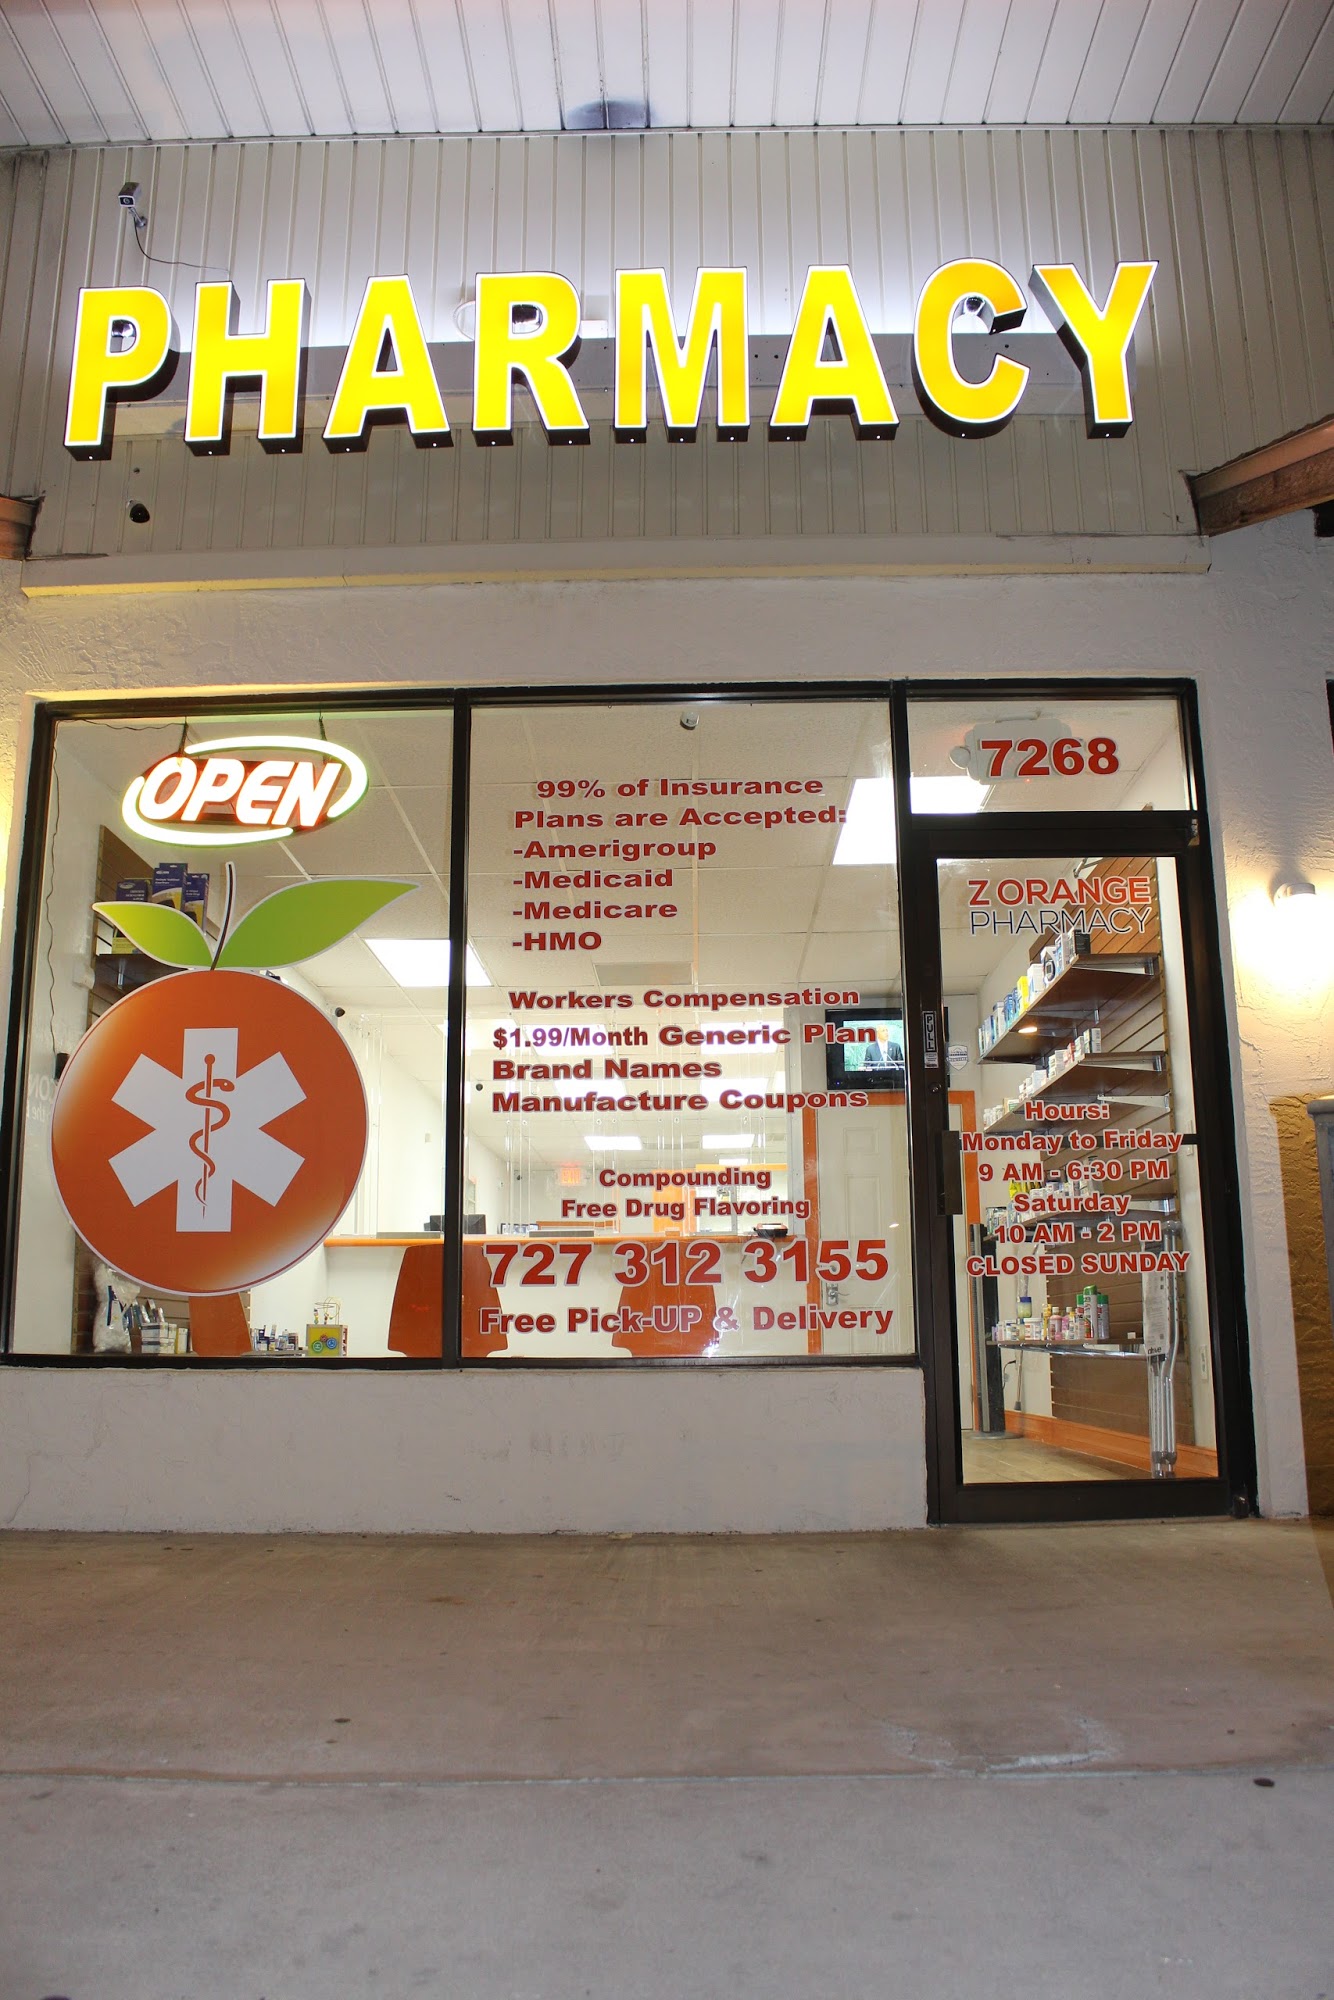 Z Orange Pharmacy